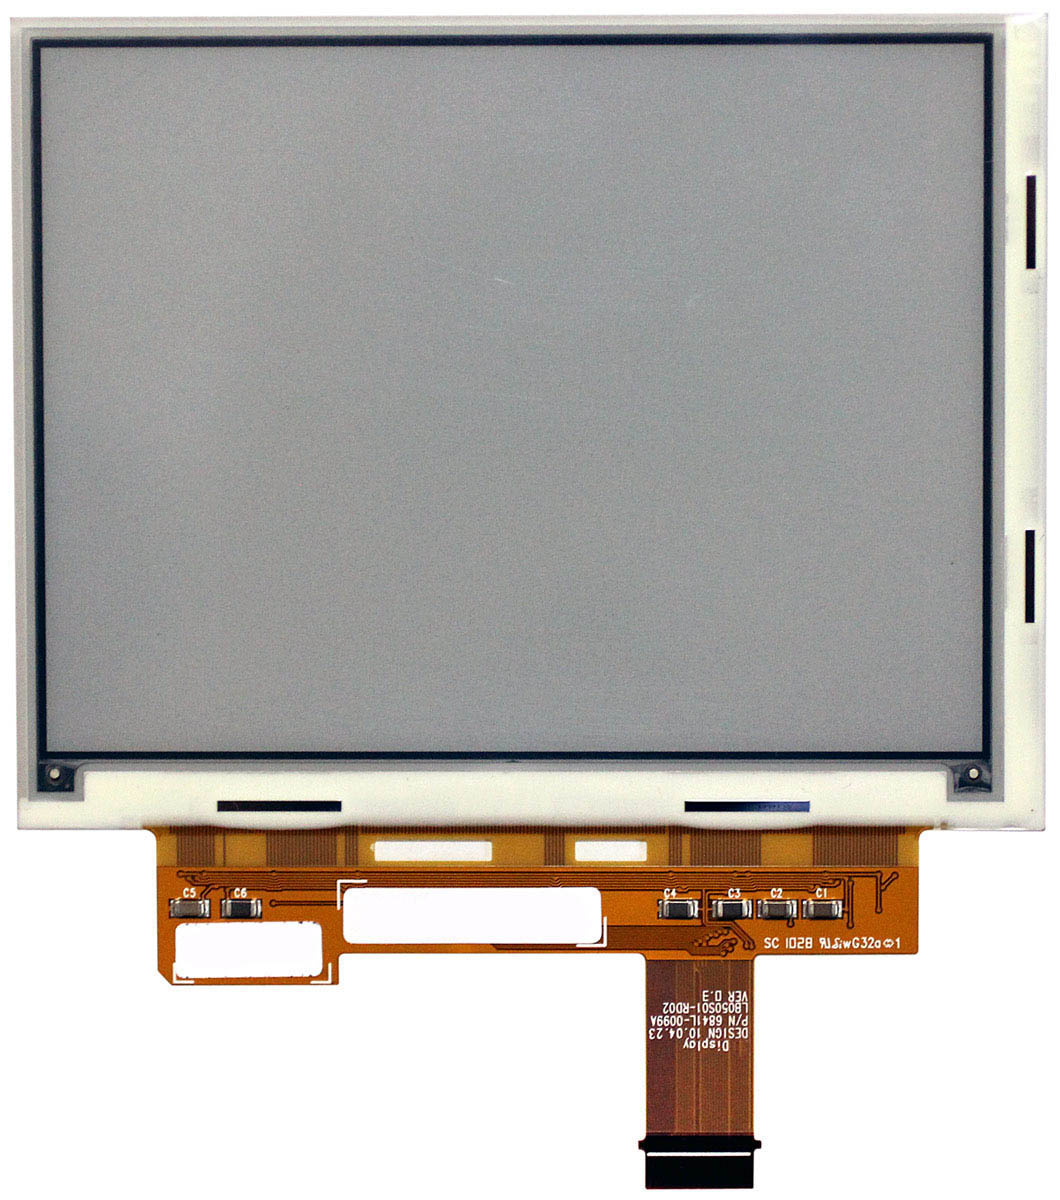 Купить экран для электронной книги e-ink 5" LG LB050S01-RD02 (800x600) Vizplex